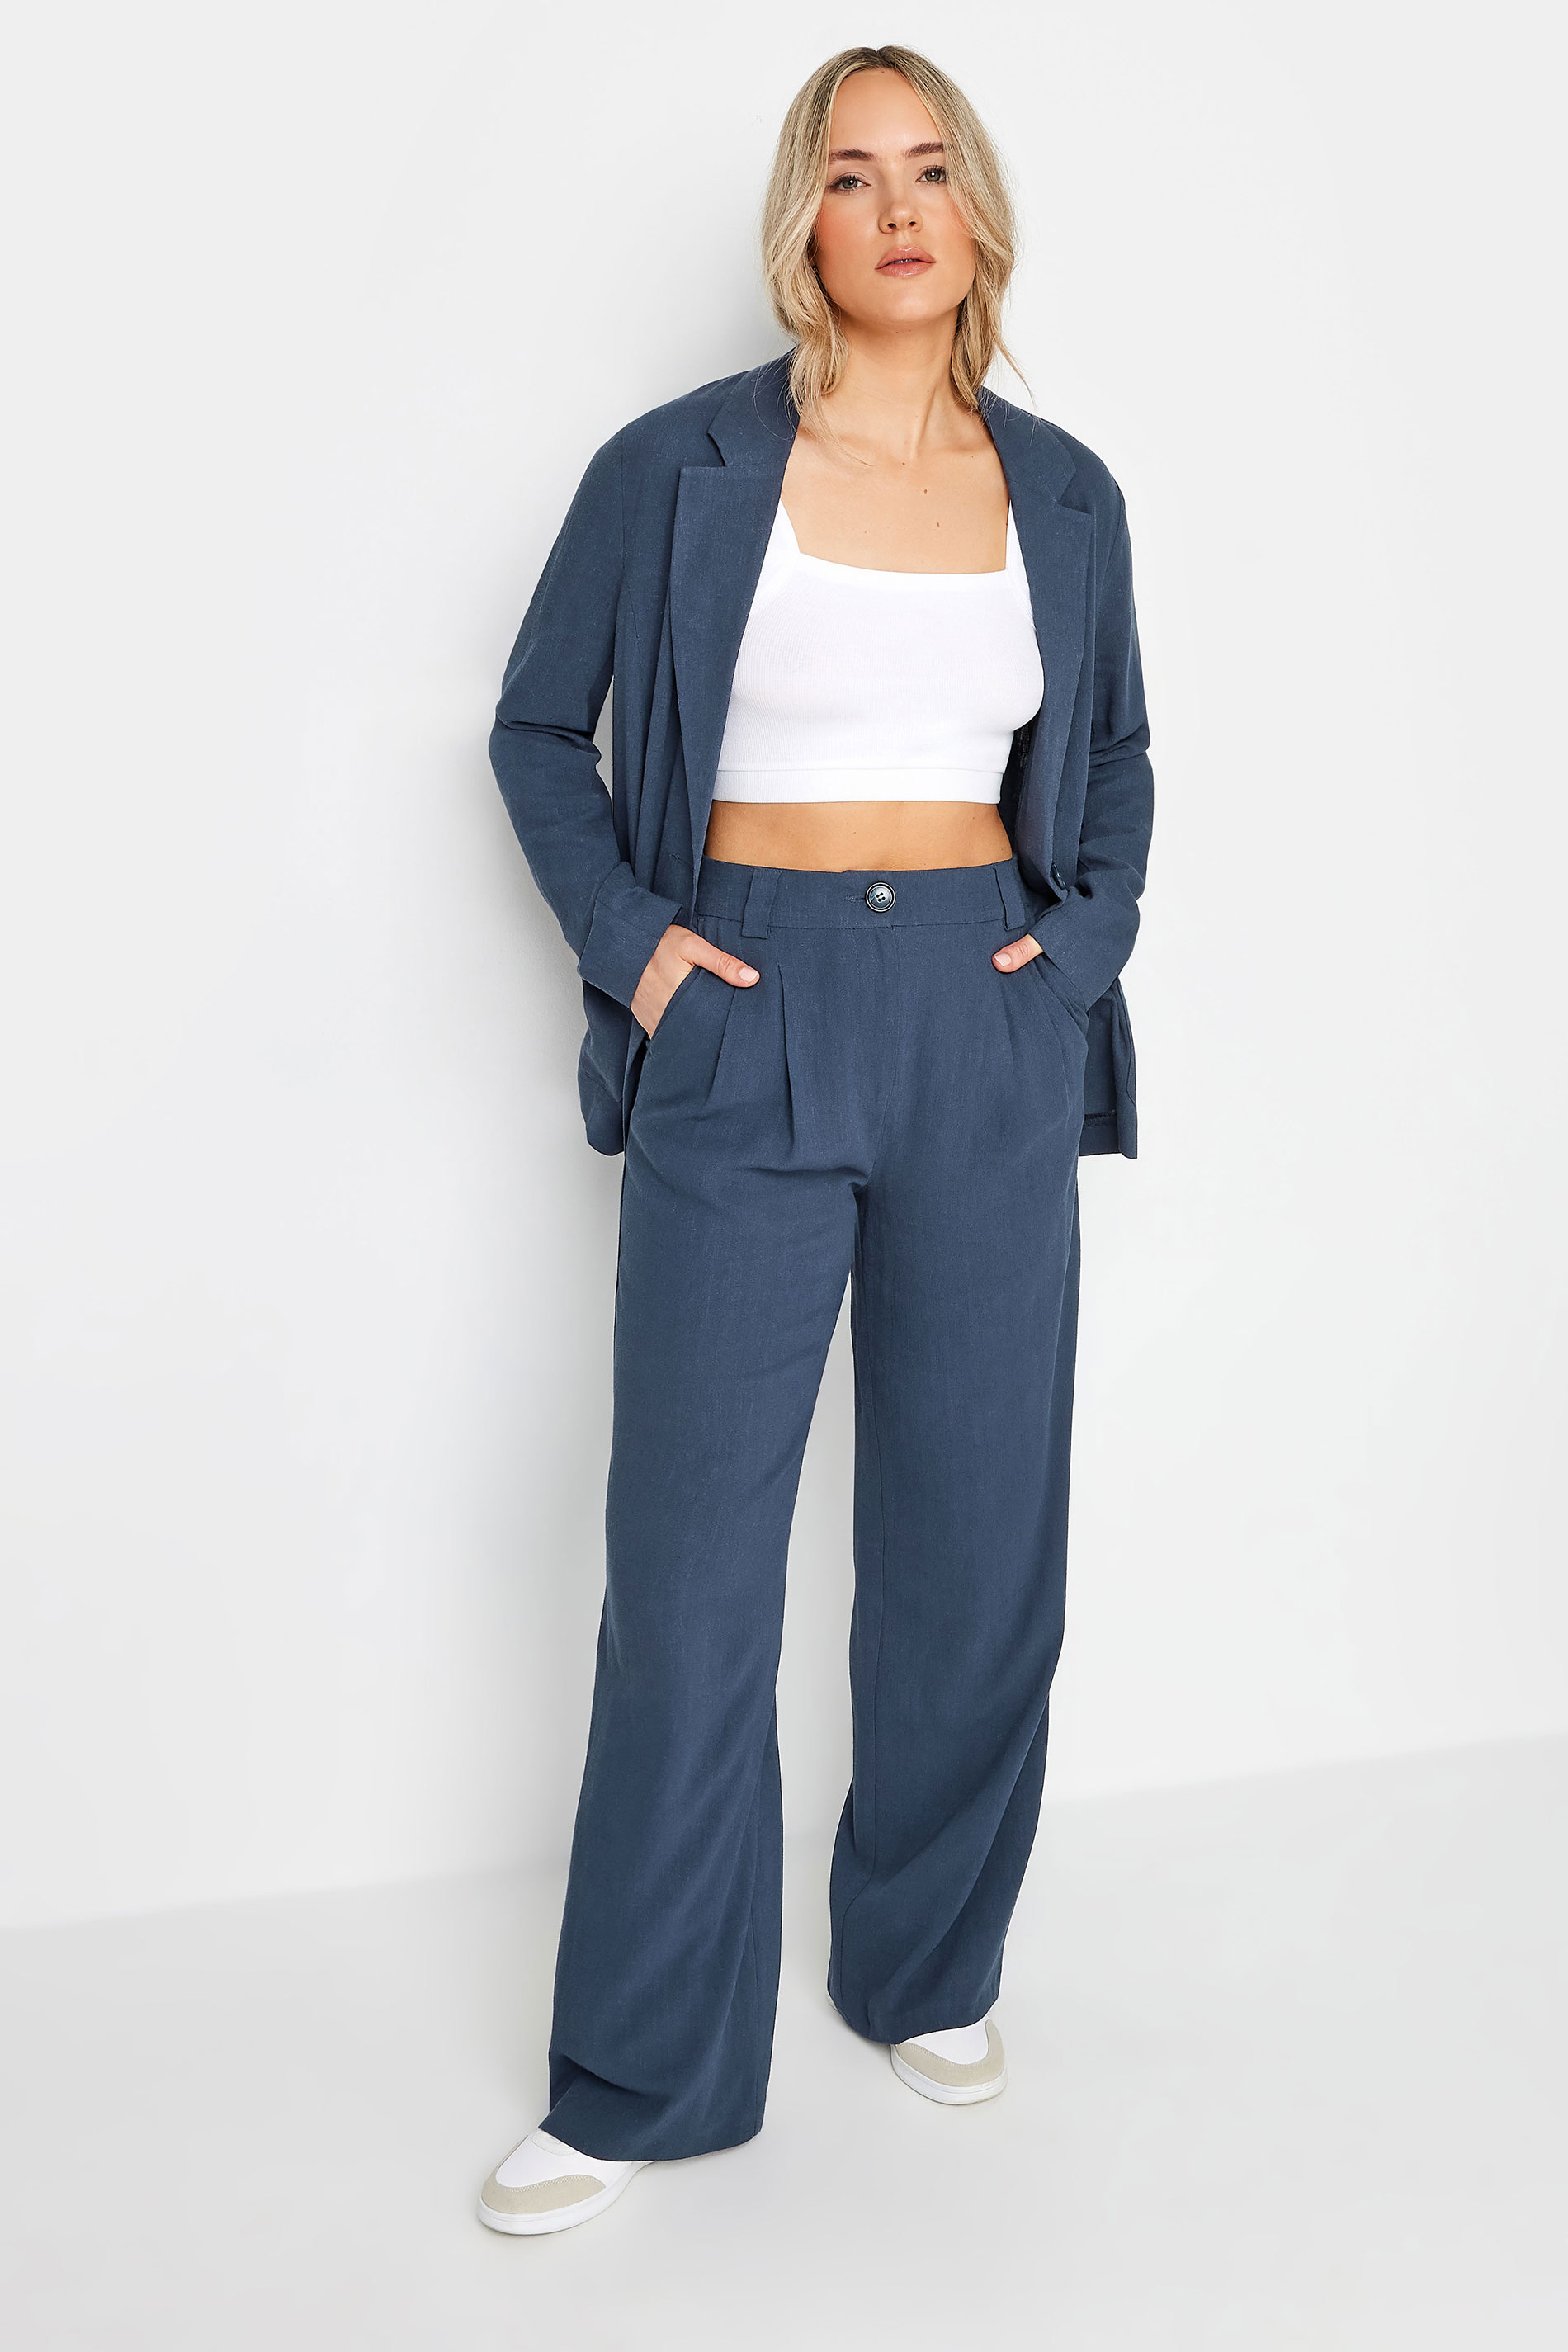 LTS Tall Women's Navy Blue Linen Blazer | Long Tall Sally 2